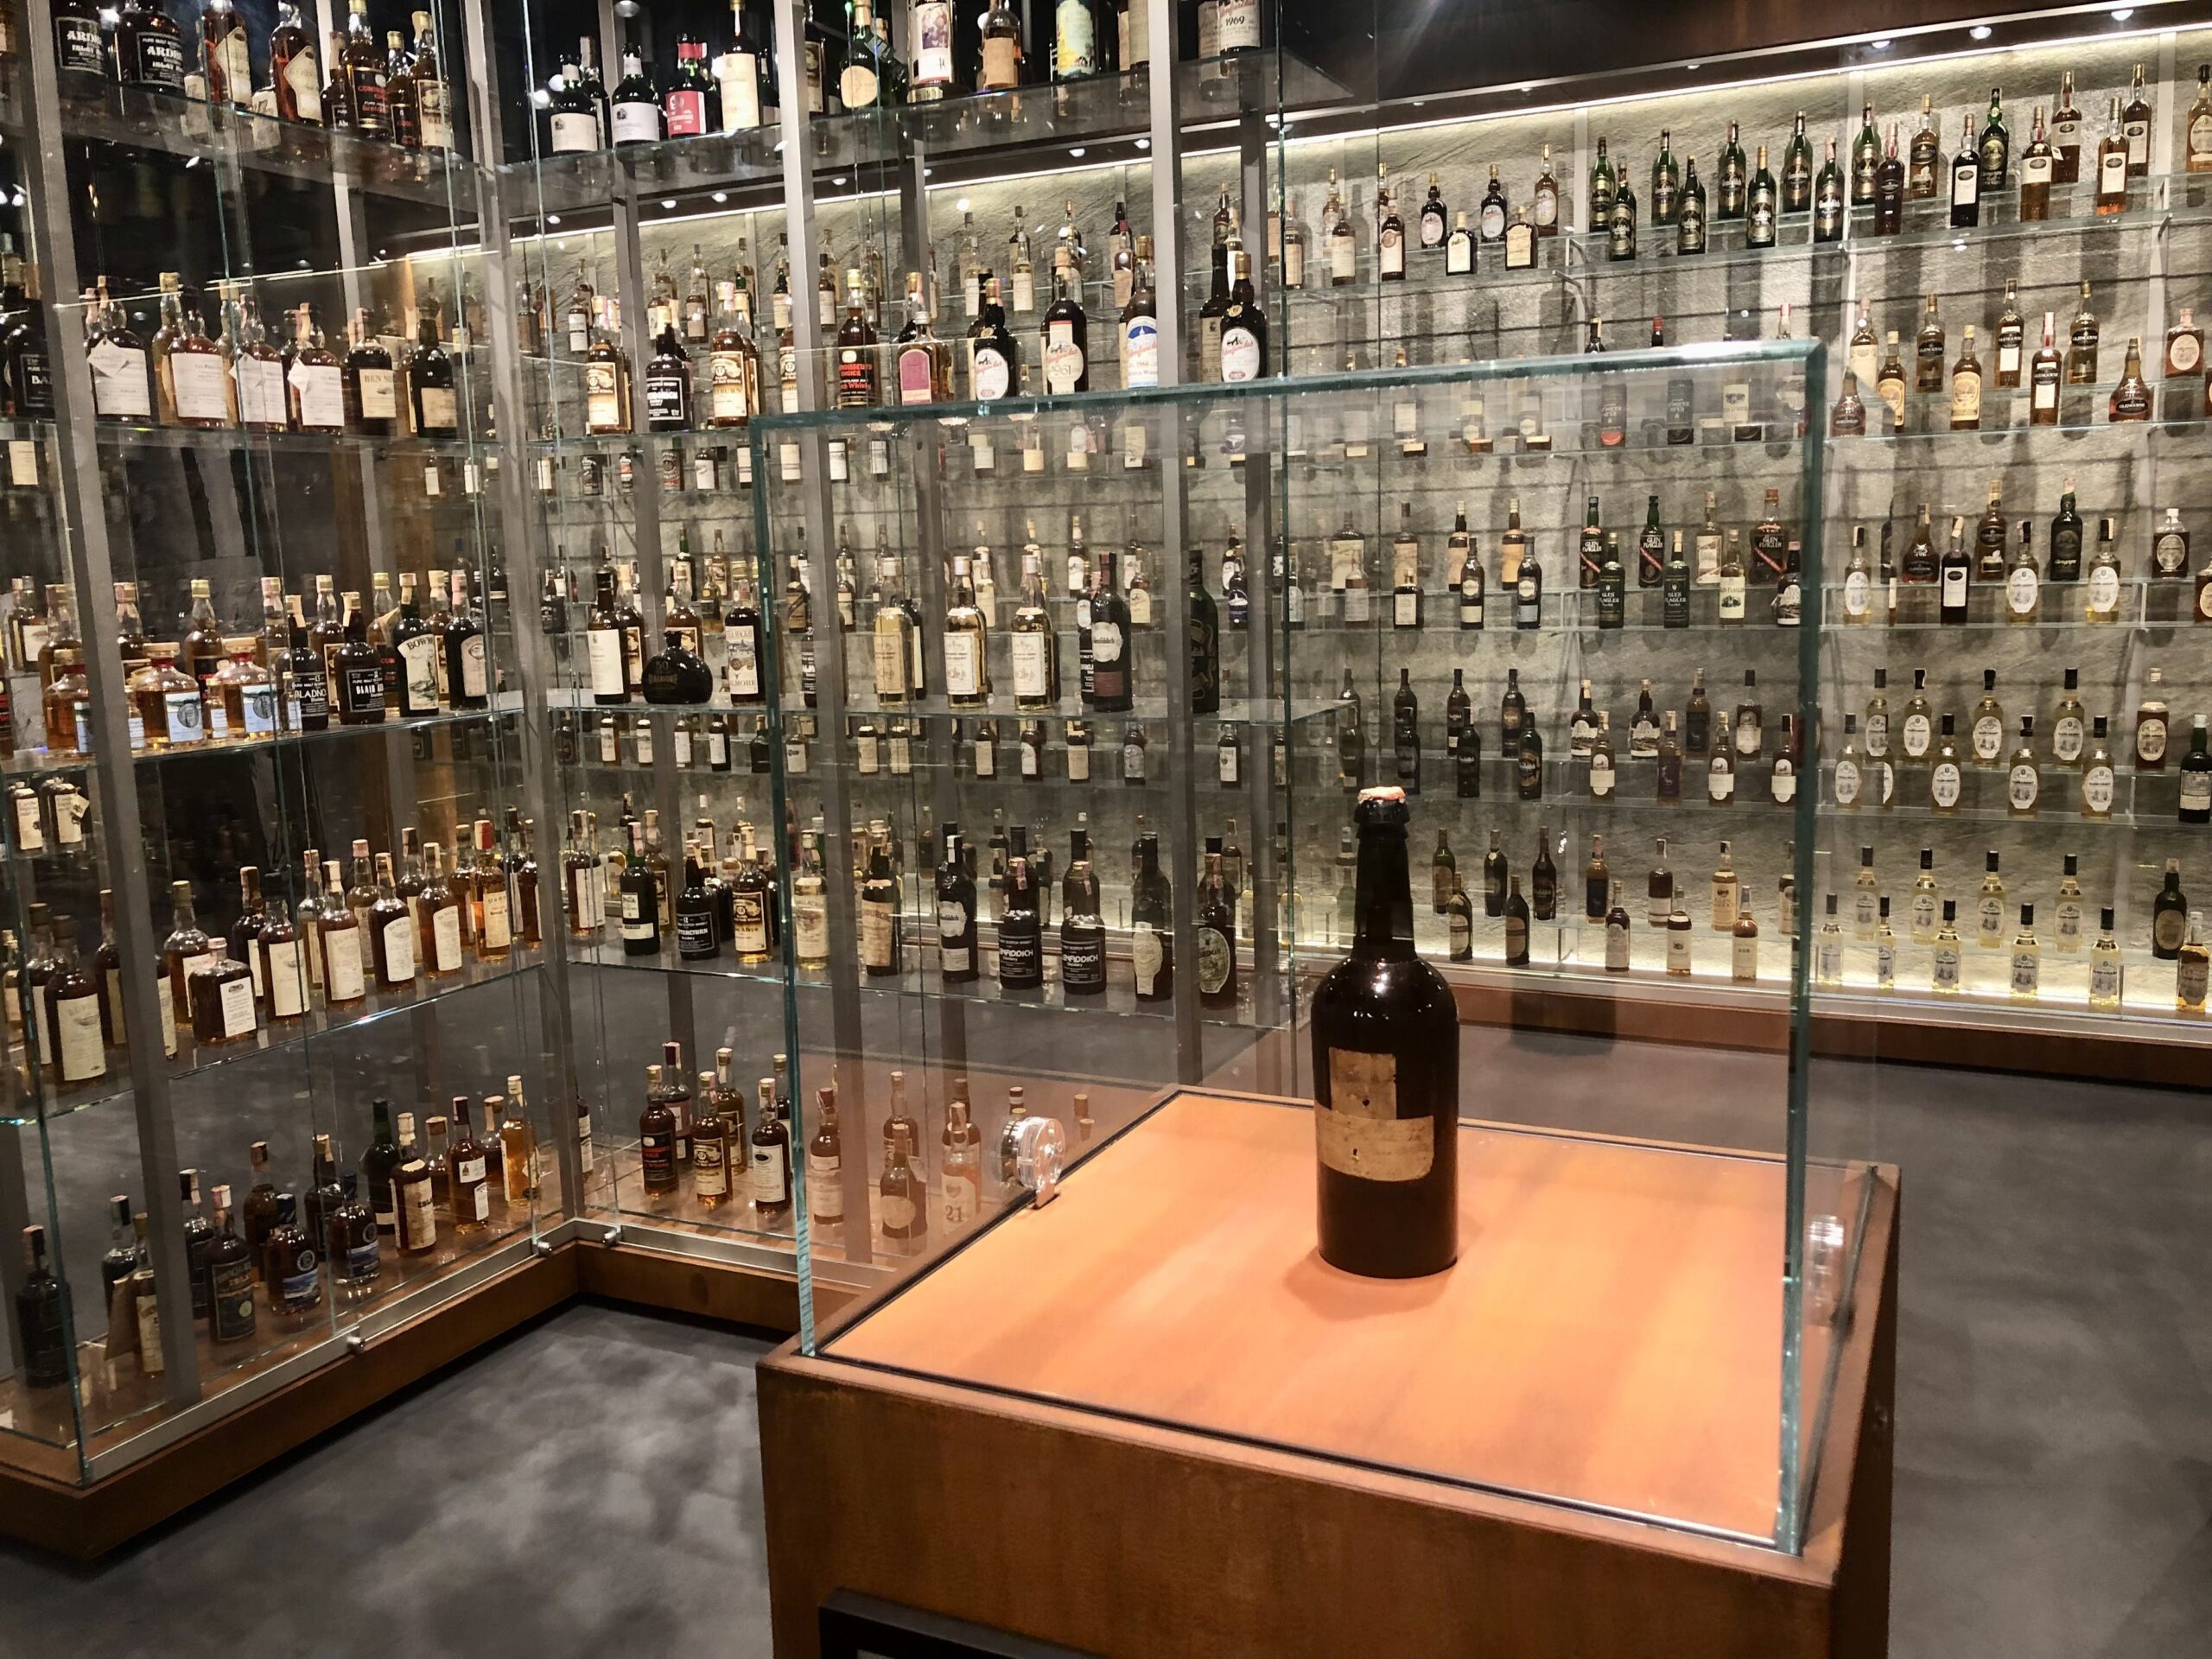 De oudste whiskyfles ter wereld uit 1843 staat in Sassenheim, veilig opgesteld achter een glazen omheining.